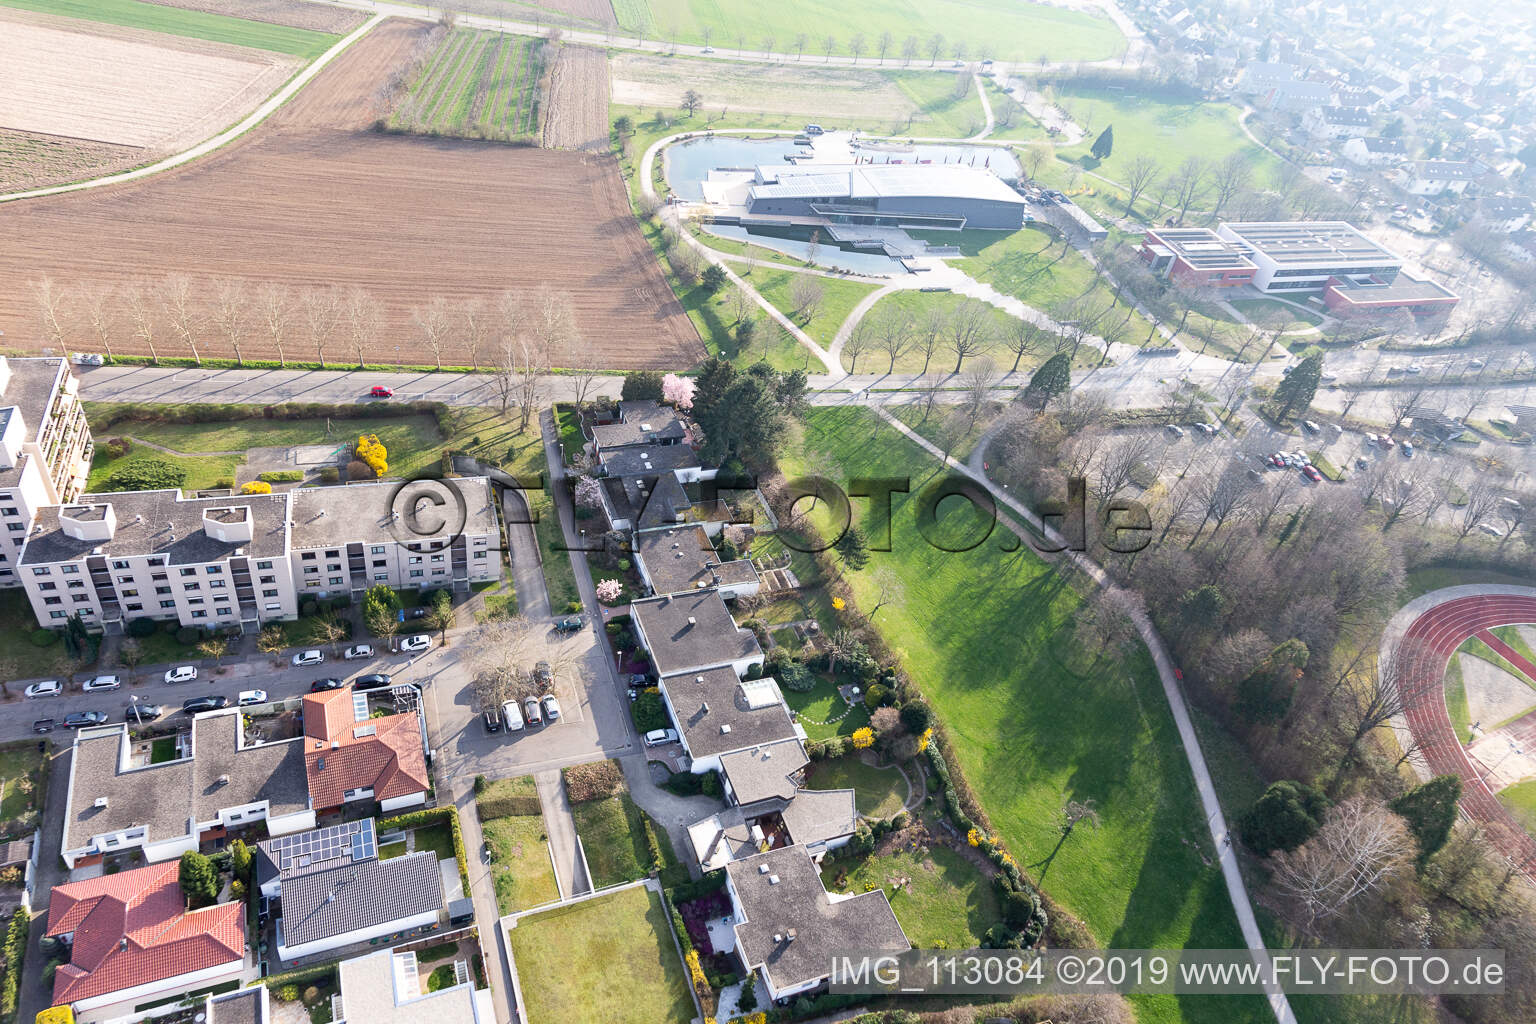 Luftbild von Frankenstr in Denzlingen im Bundesland Baden-Württemberg, Deutschland